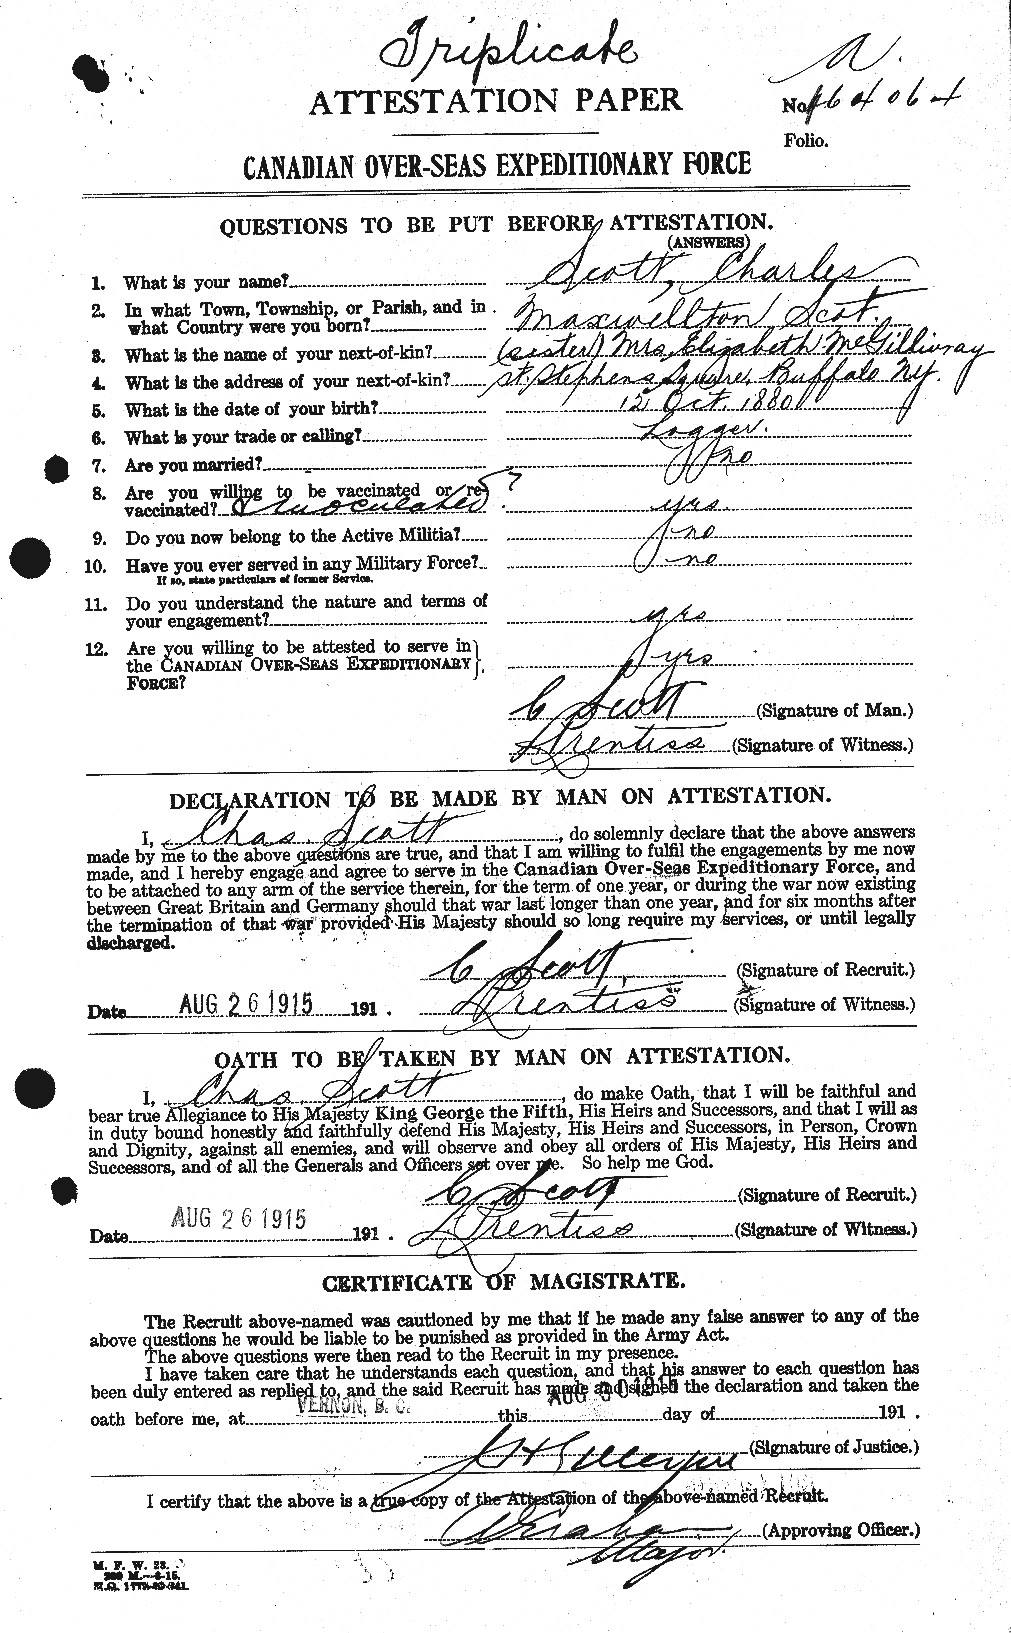 Dossiers du Personnel de la Première Guerre mondiale - CEC 086189a